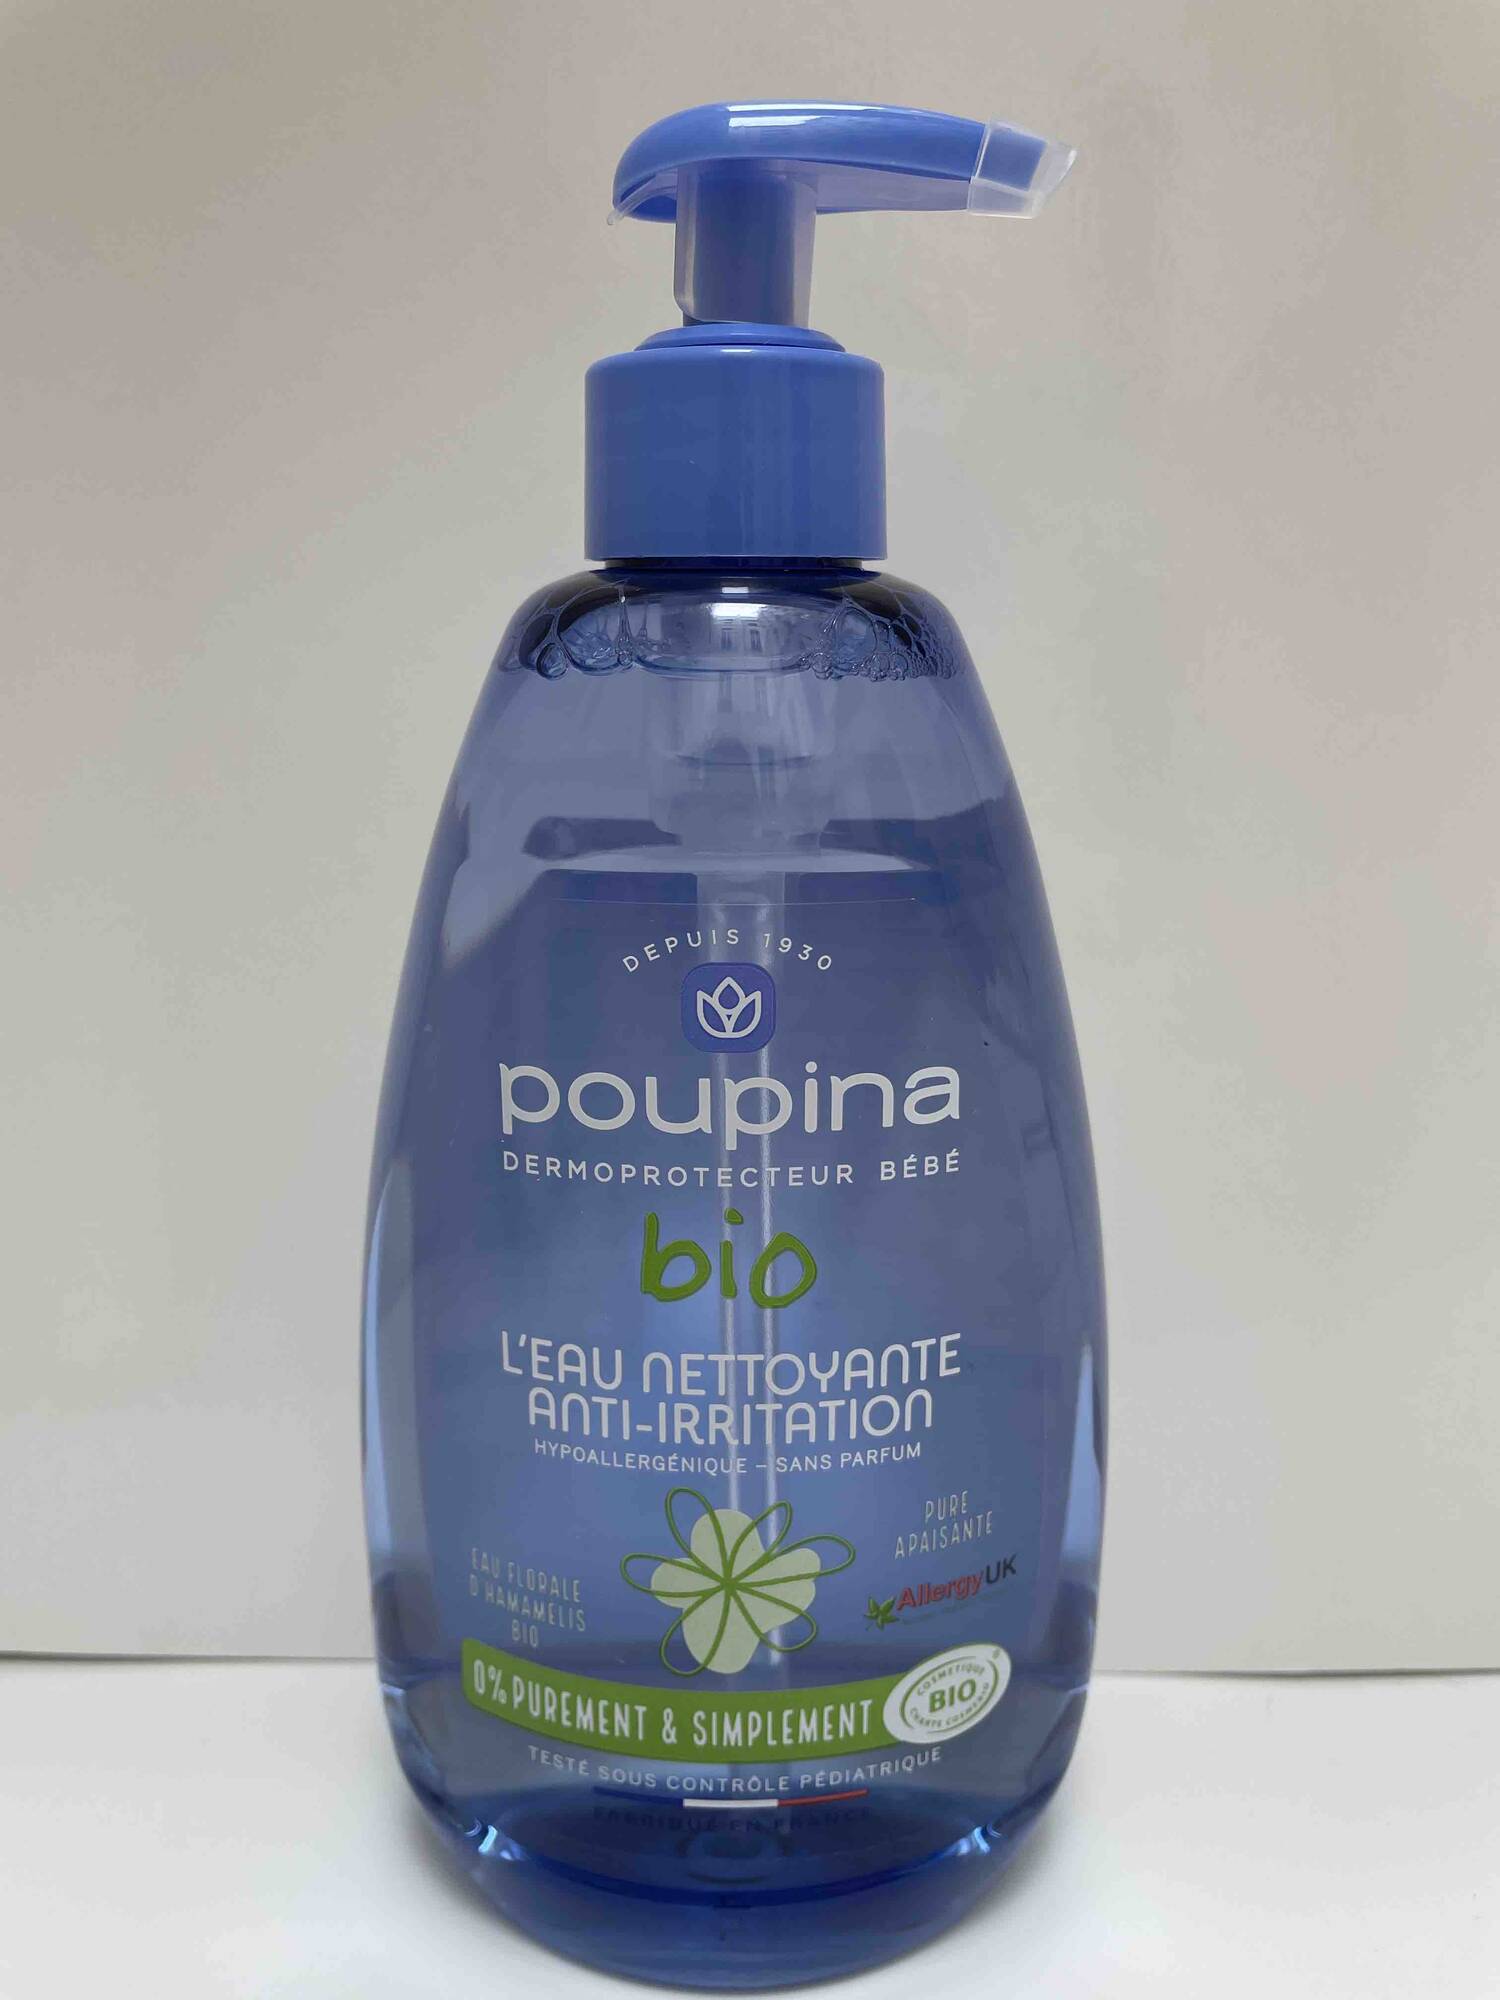 POUPINA - Dermoprotecteur bébé - L'eau nettoyante anti-irritation